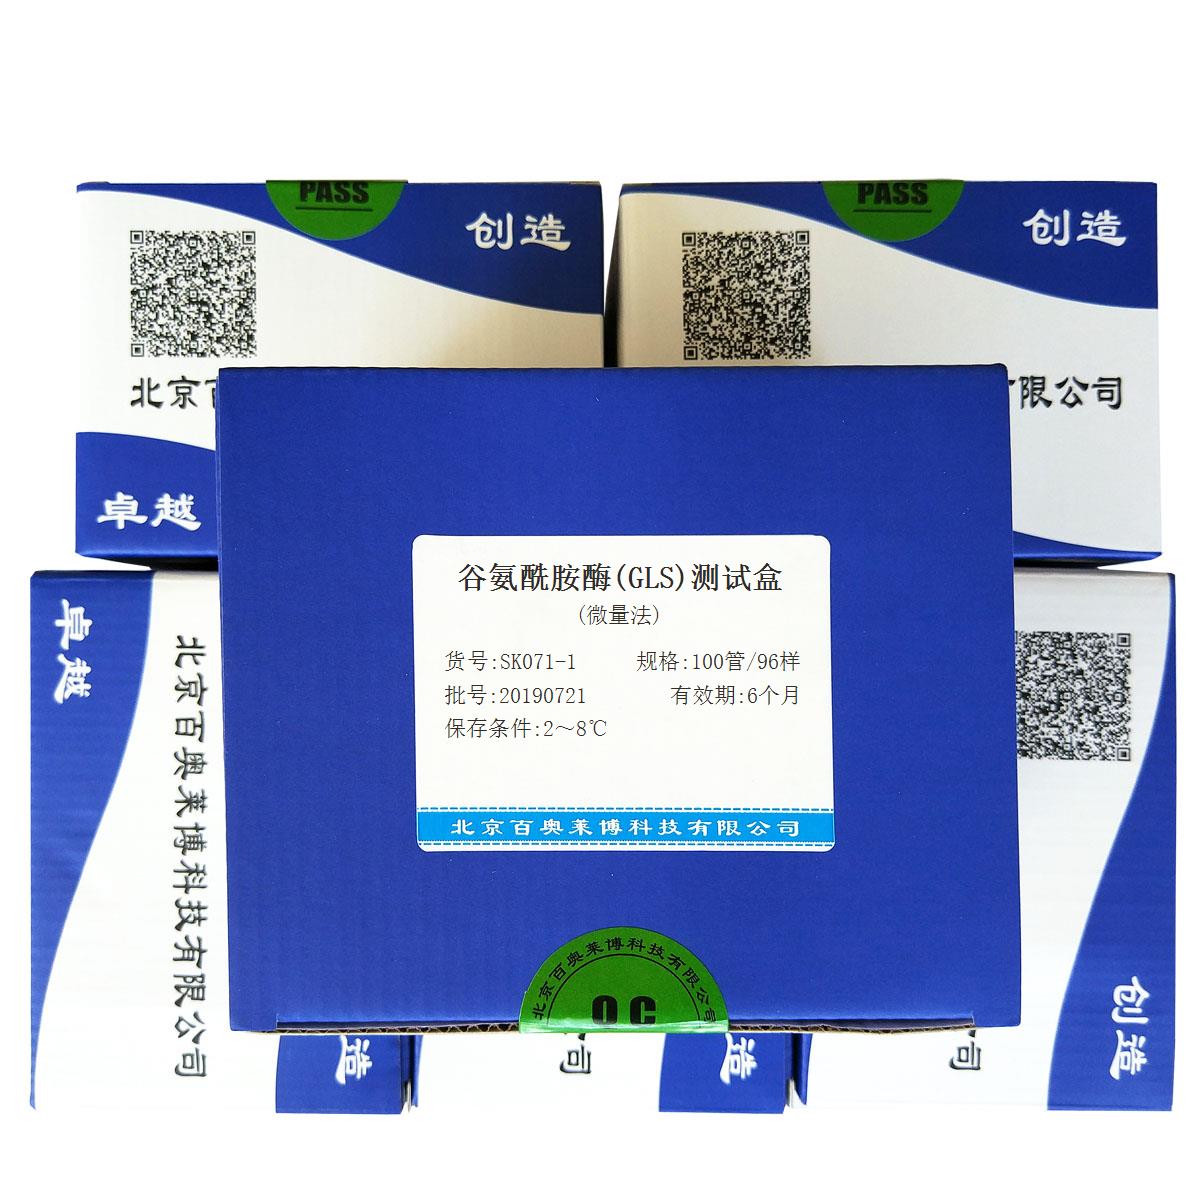 谷氨酰胺酶(GLS)测试盒(微量法)北京供应商